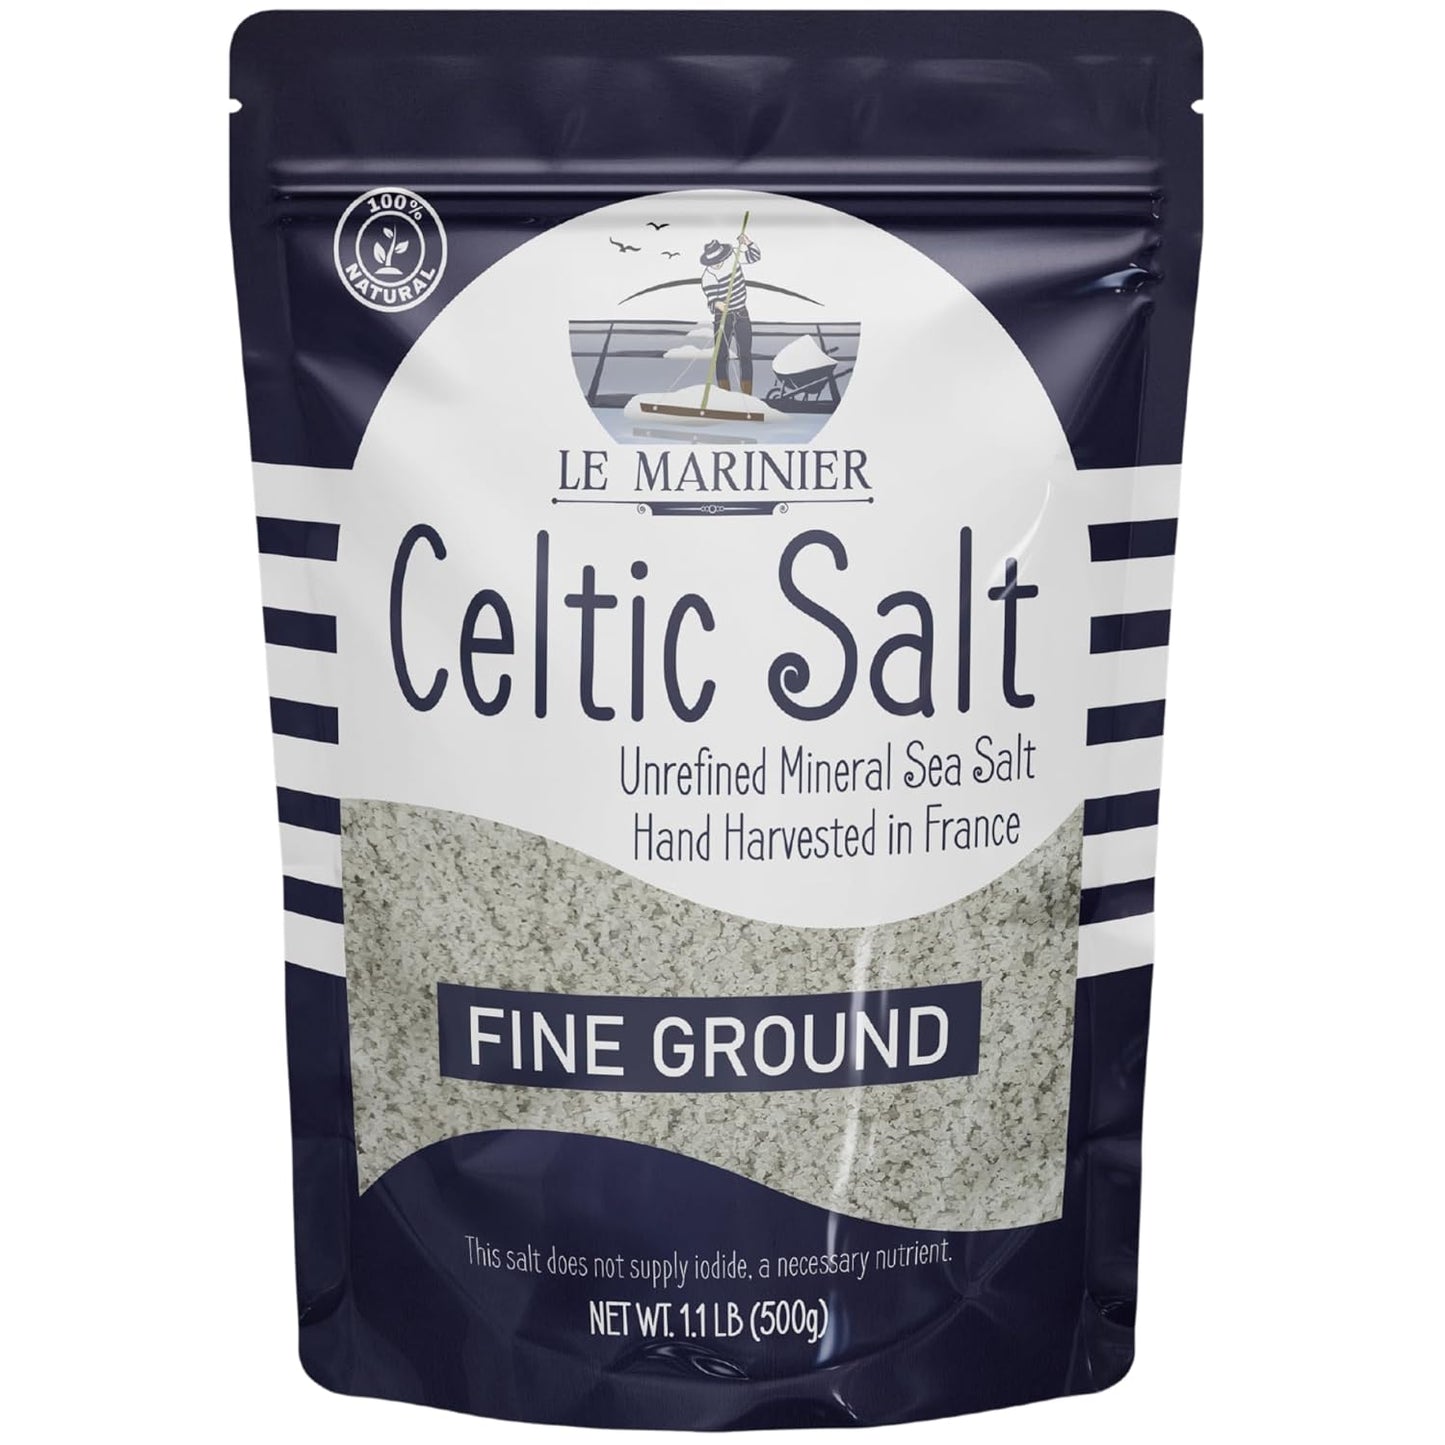 Le Marinier Celtic Salt Fine Ground - 1.1lb / 500g